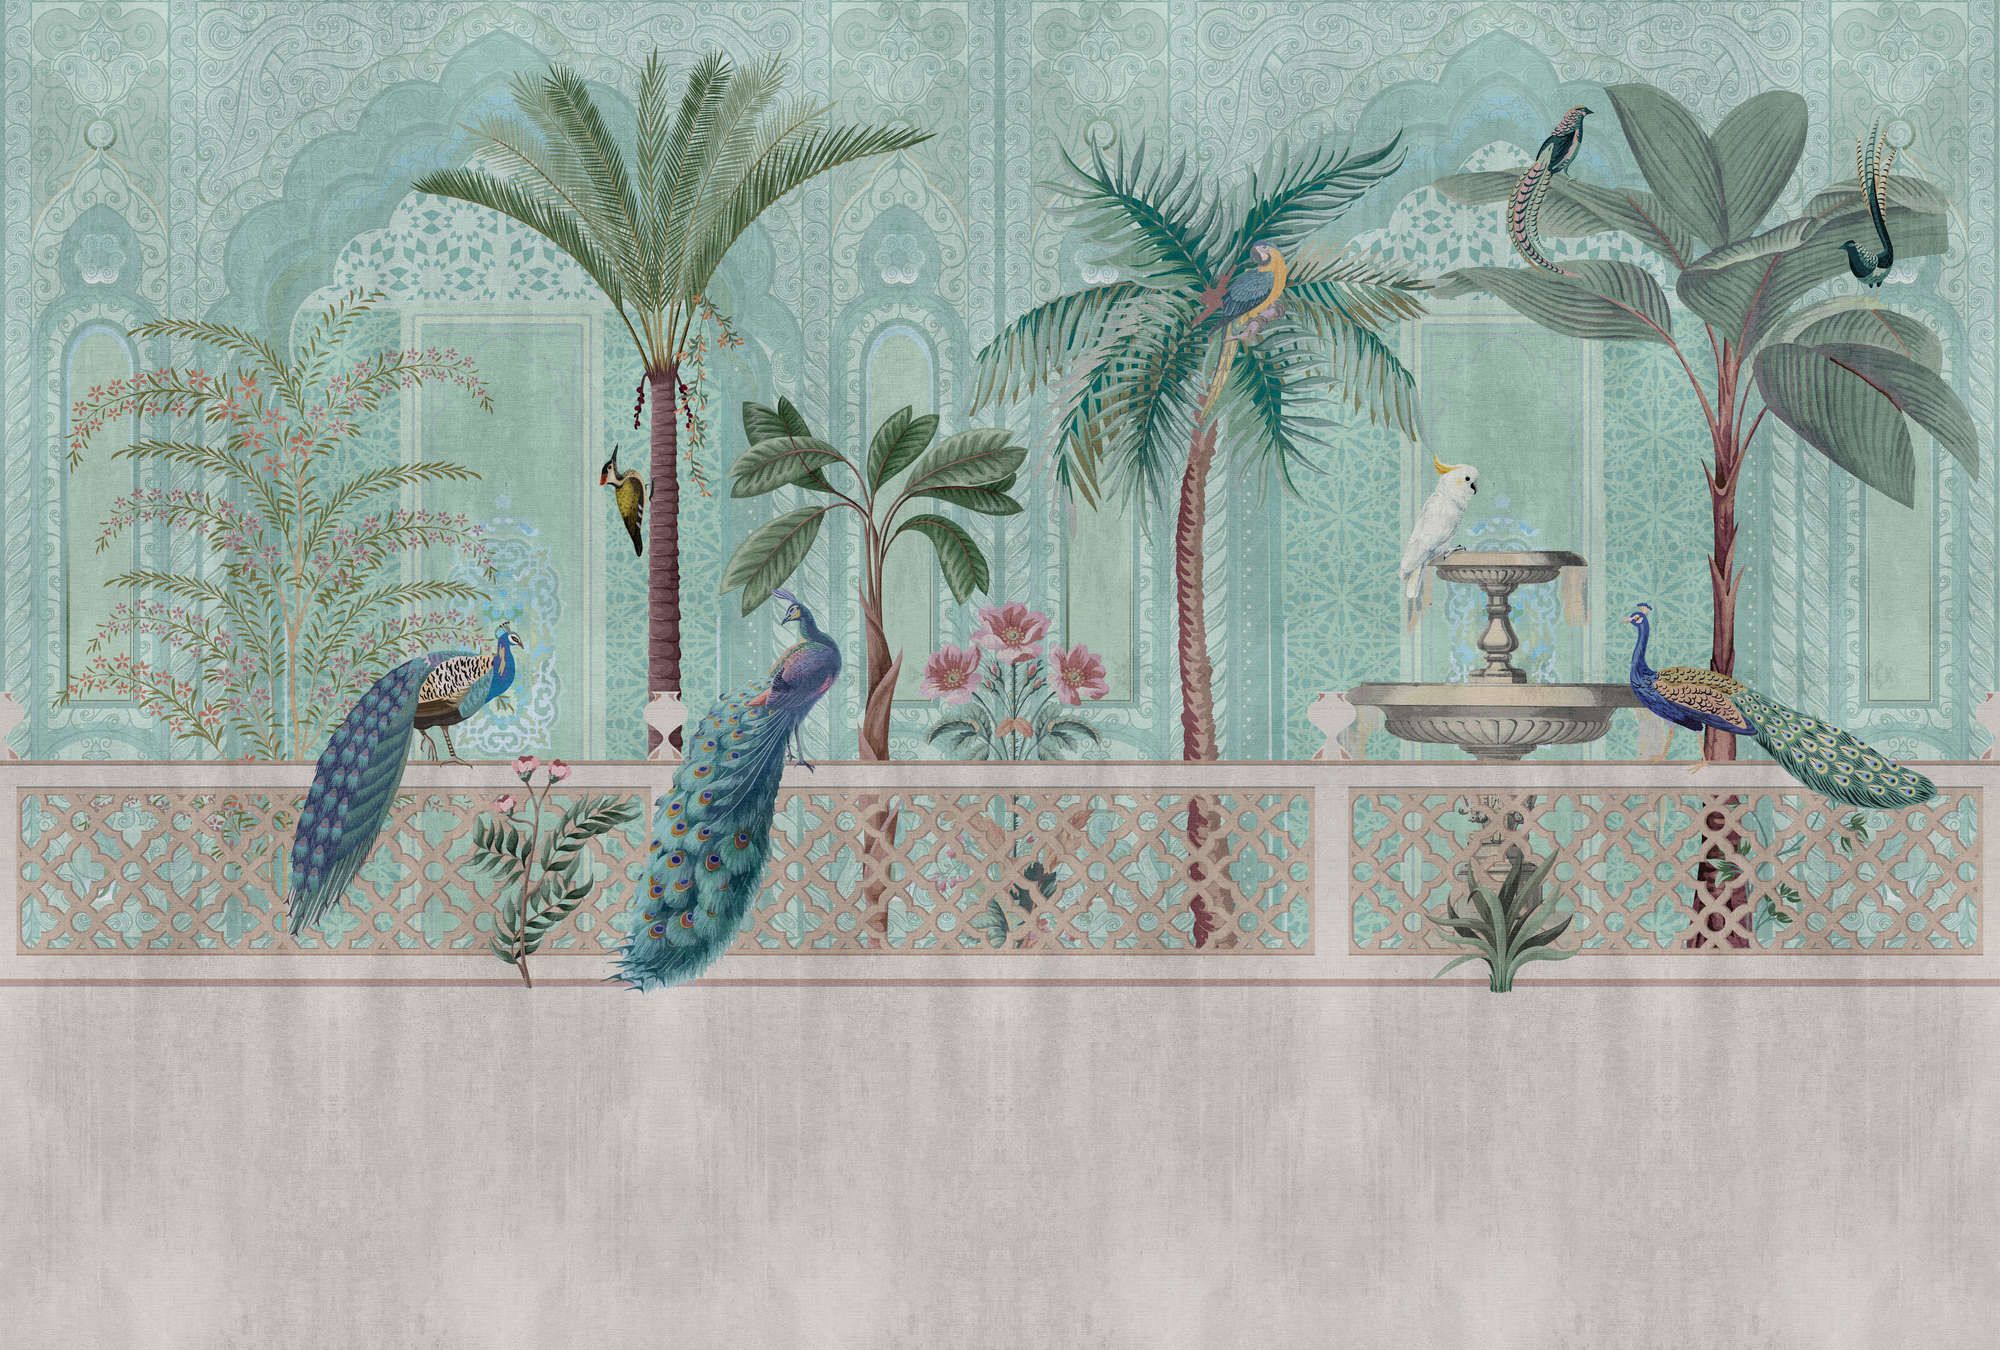             Digital behang »pavo« - Vogels, palmbomen & fonteinen - Groen, blauw met tapijtstructuur | mat, glad vlies
        